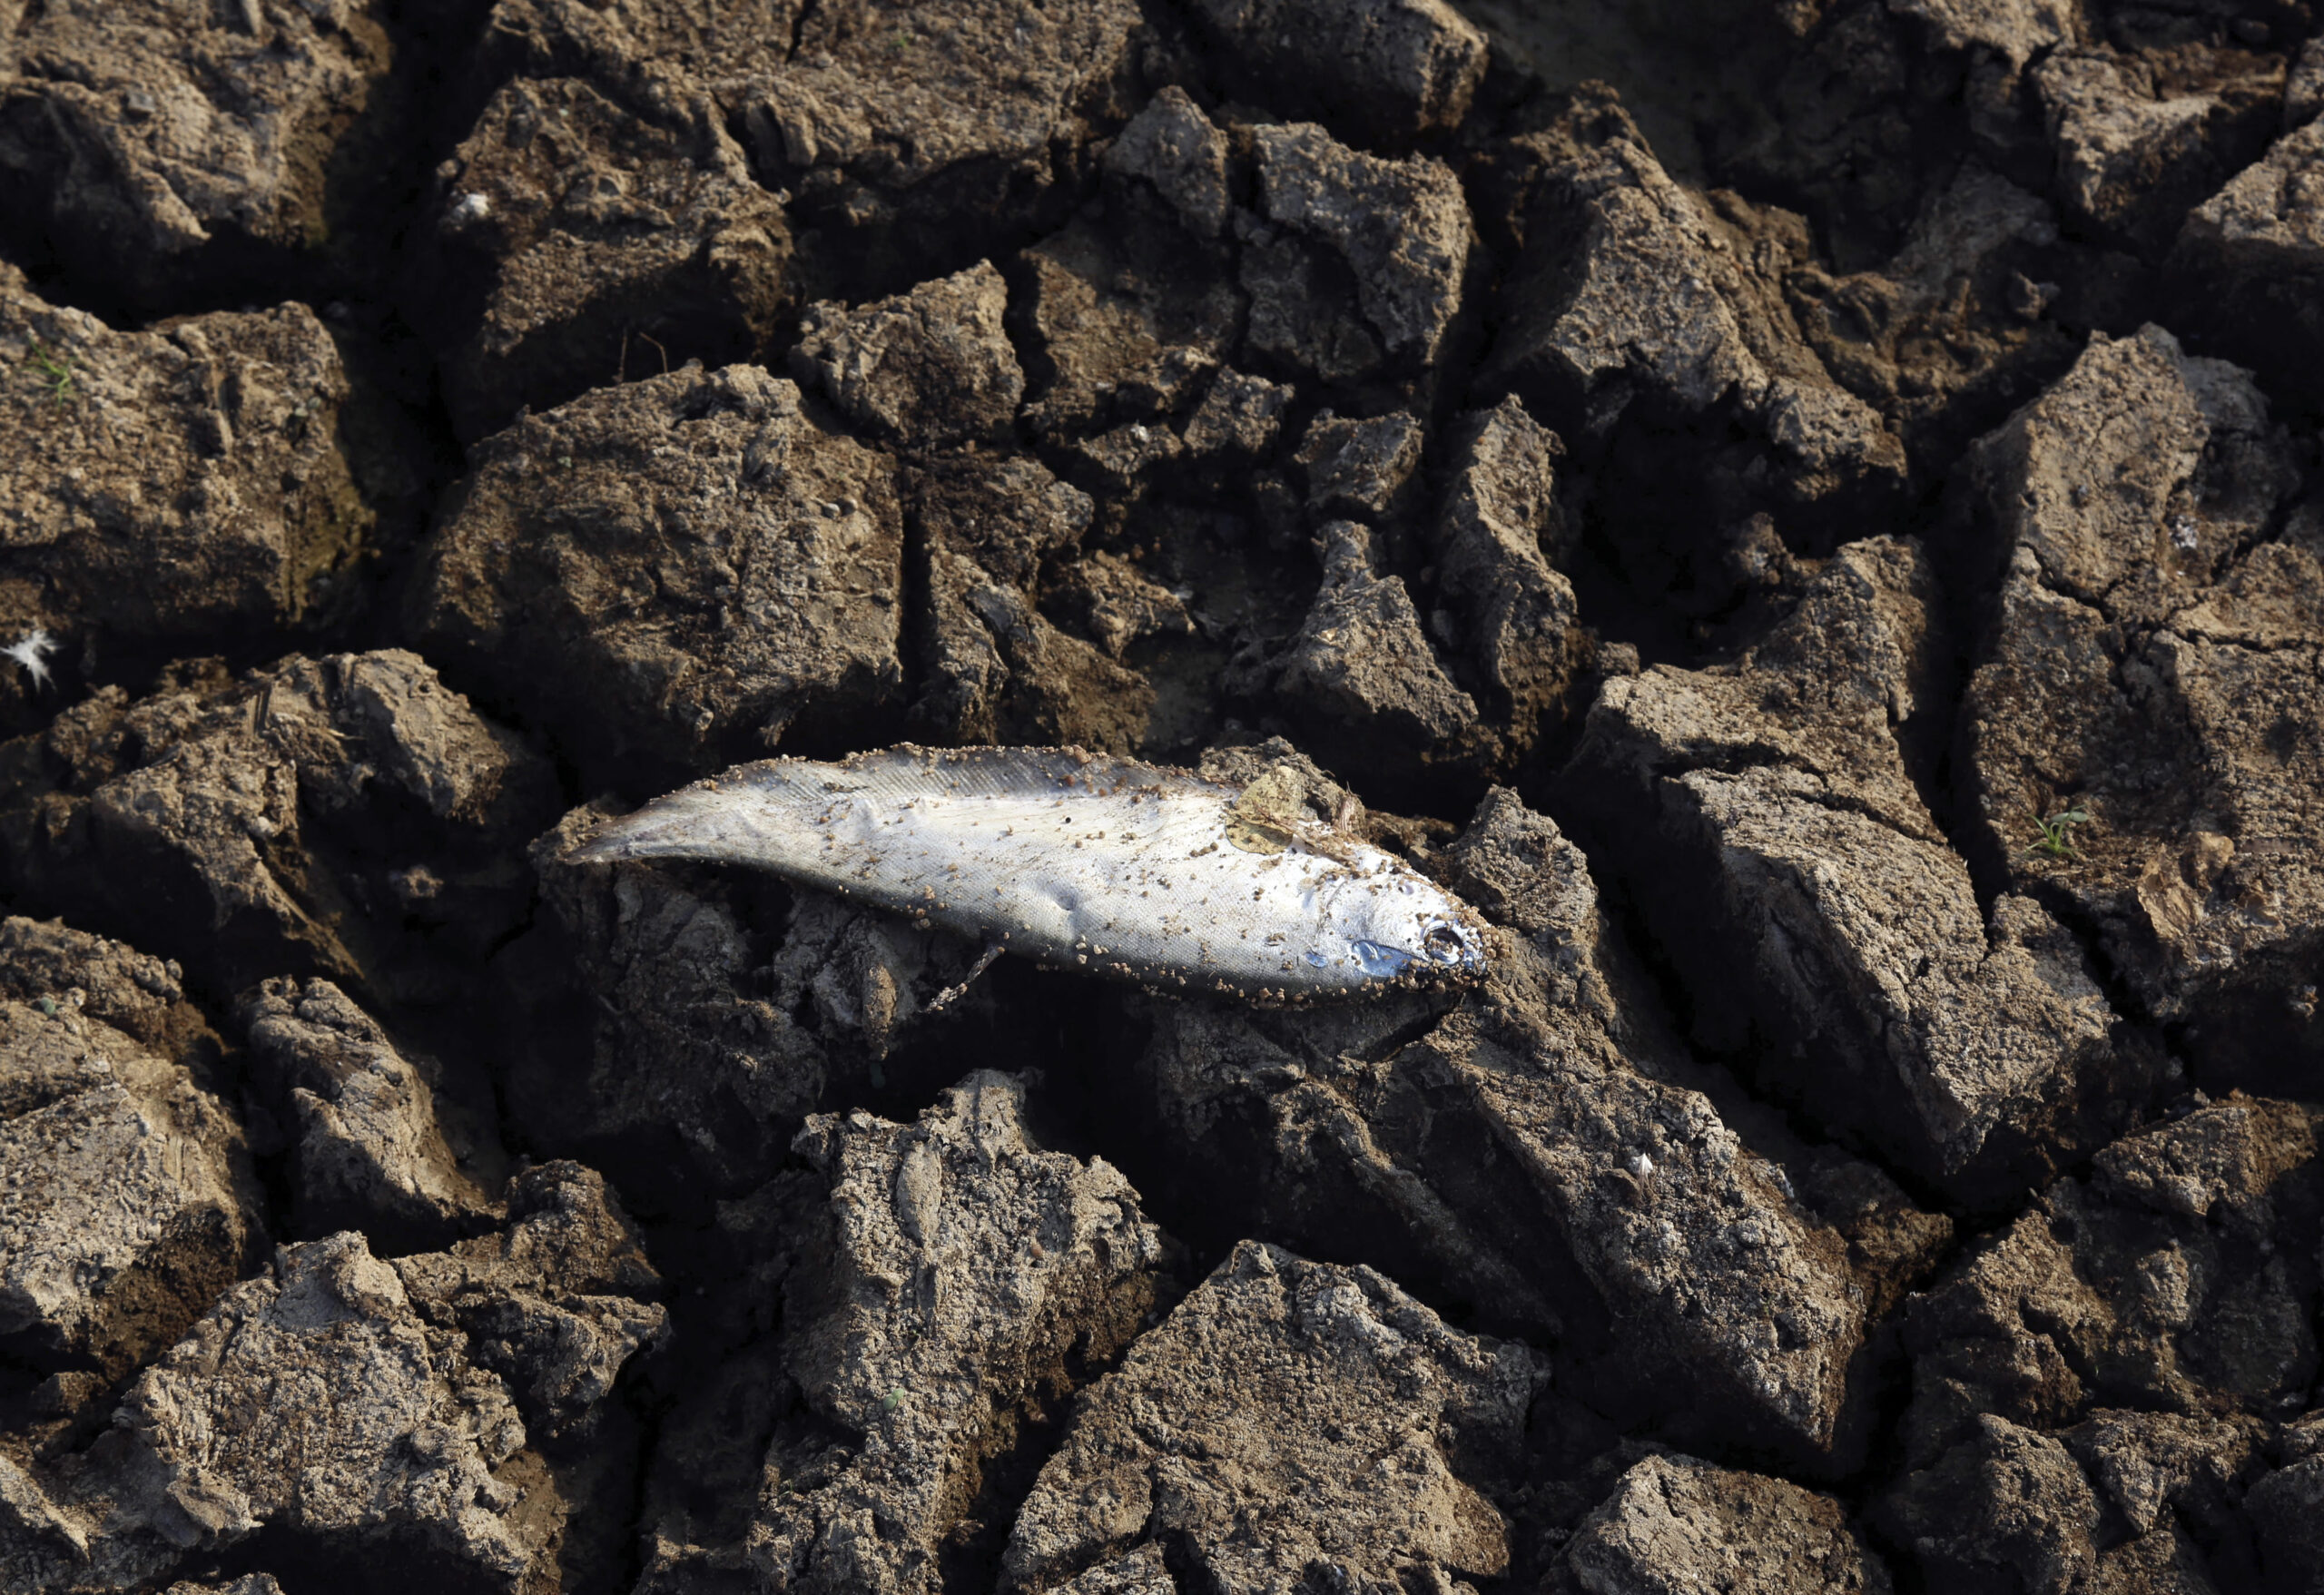 Ιράκ: Χιλιάδες νεκρά ψάρια σε ποτάμι – Η θερμοκρασία προκαλεί υψηλή αλατότητα και έλλειψη οξυγόνου